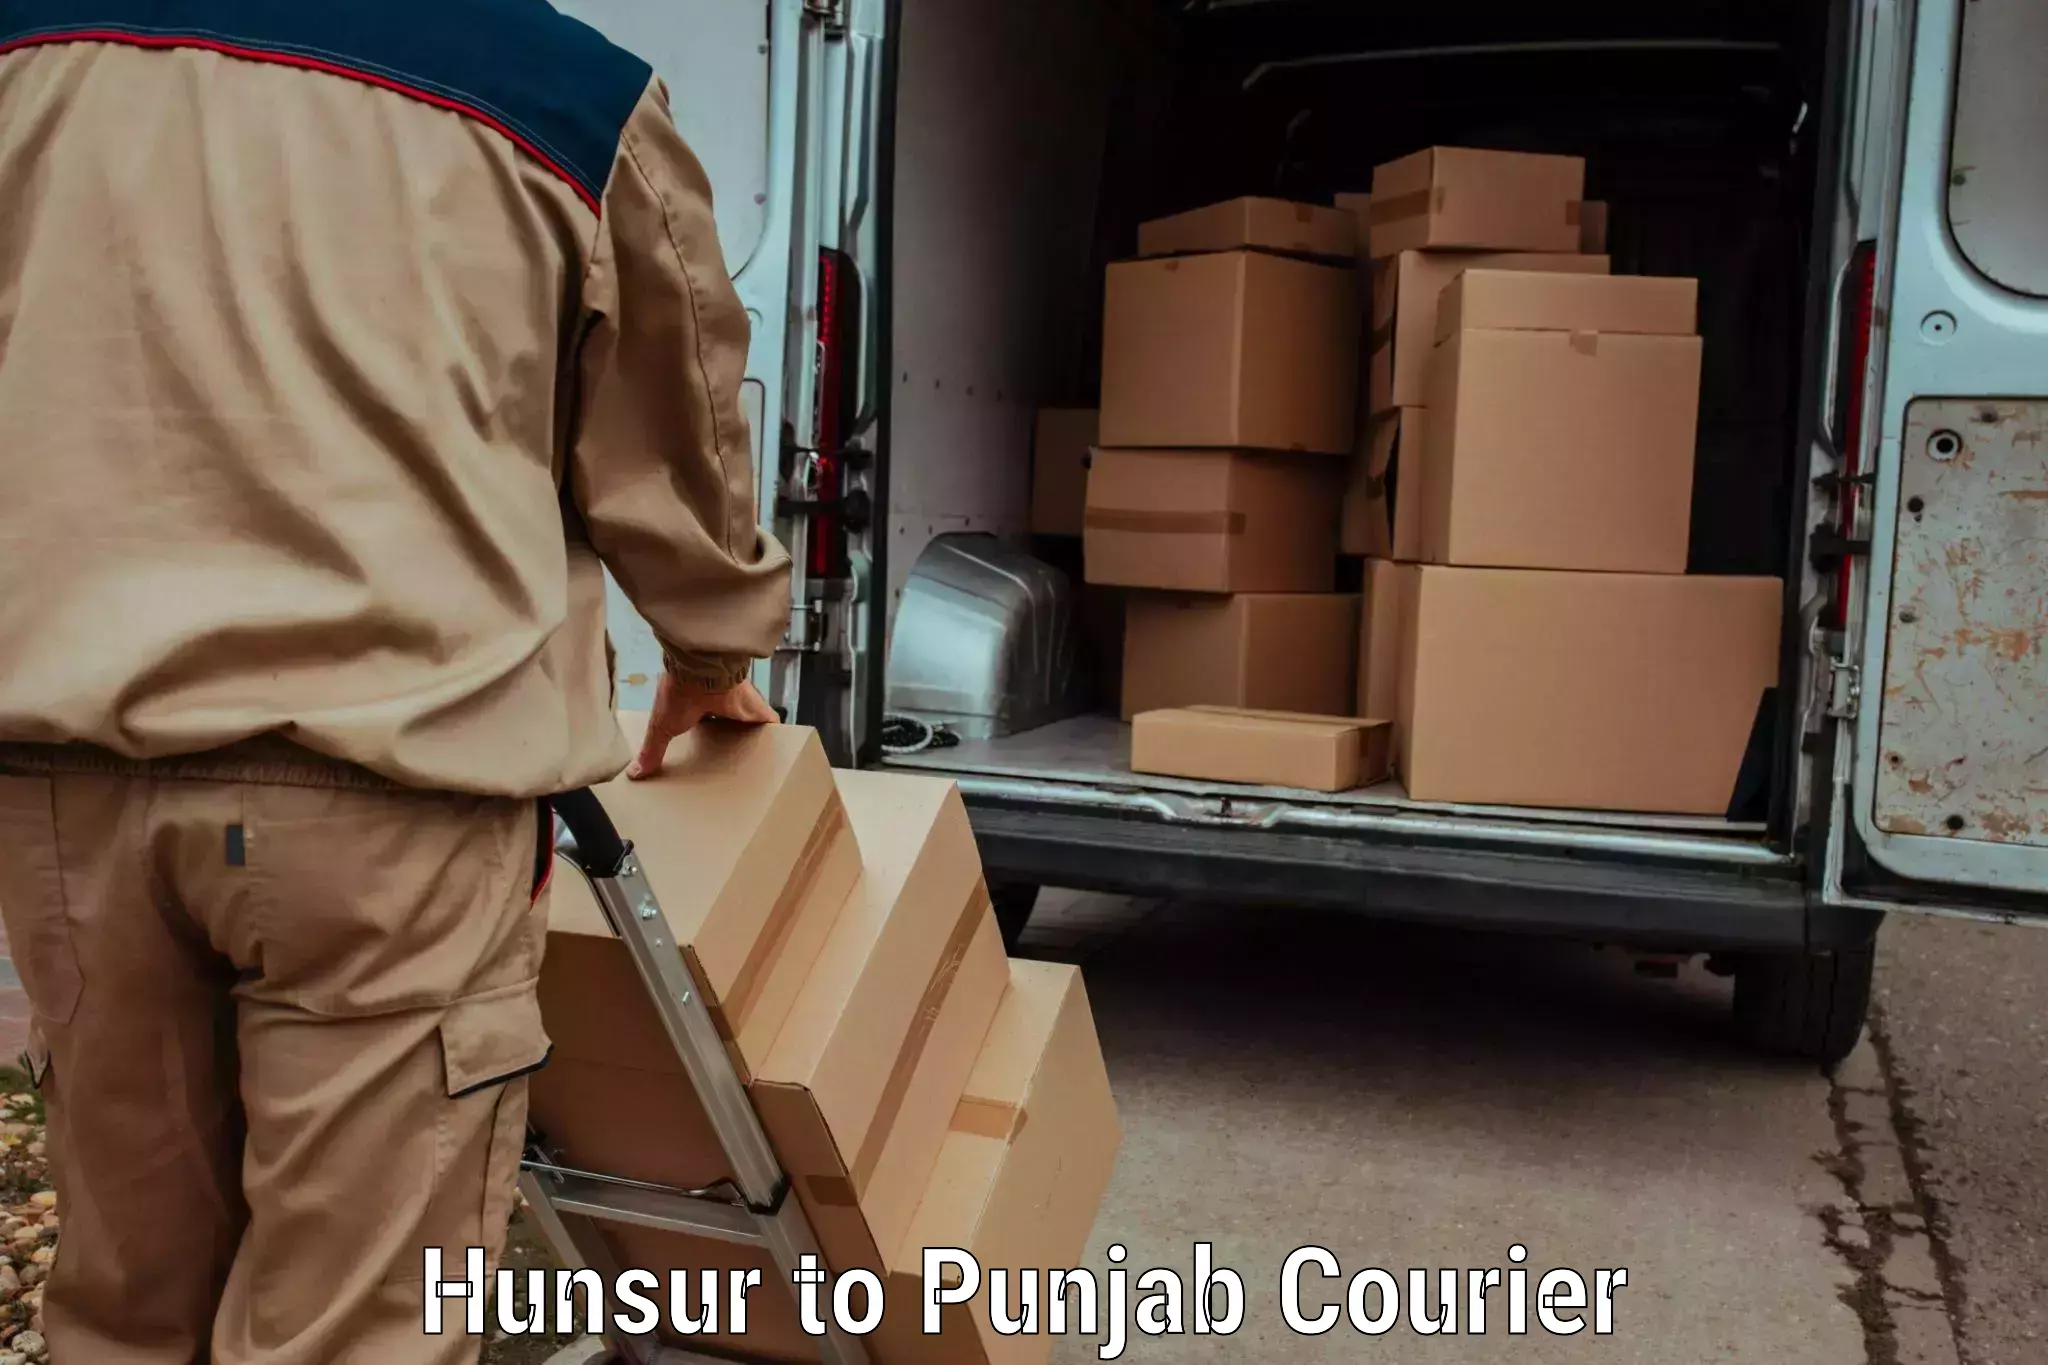 Baggage transport services Hunsur to Punjab